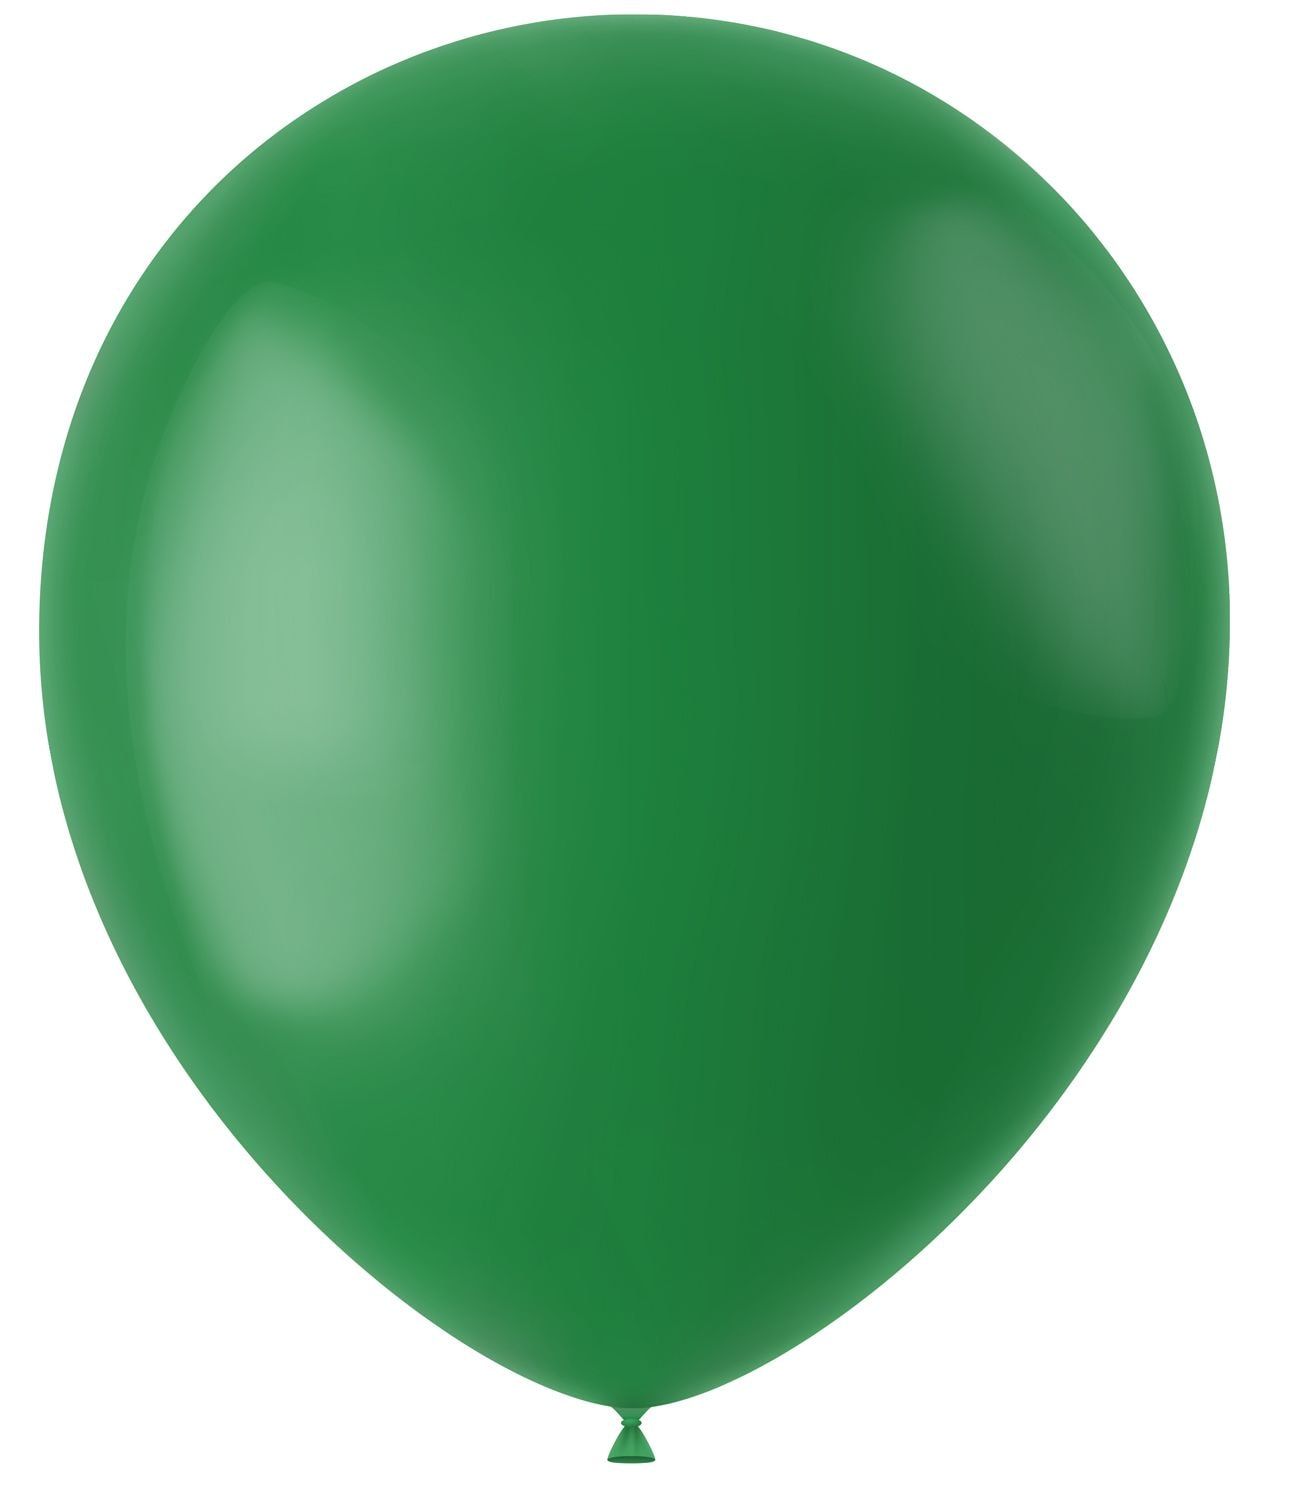 50 ballonnen pine green mat 33cm